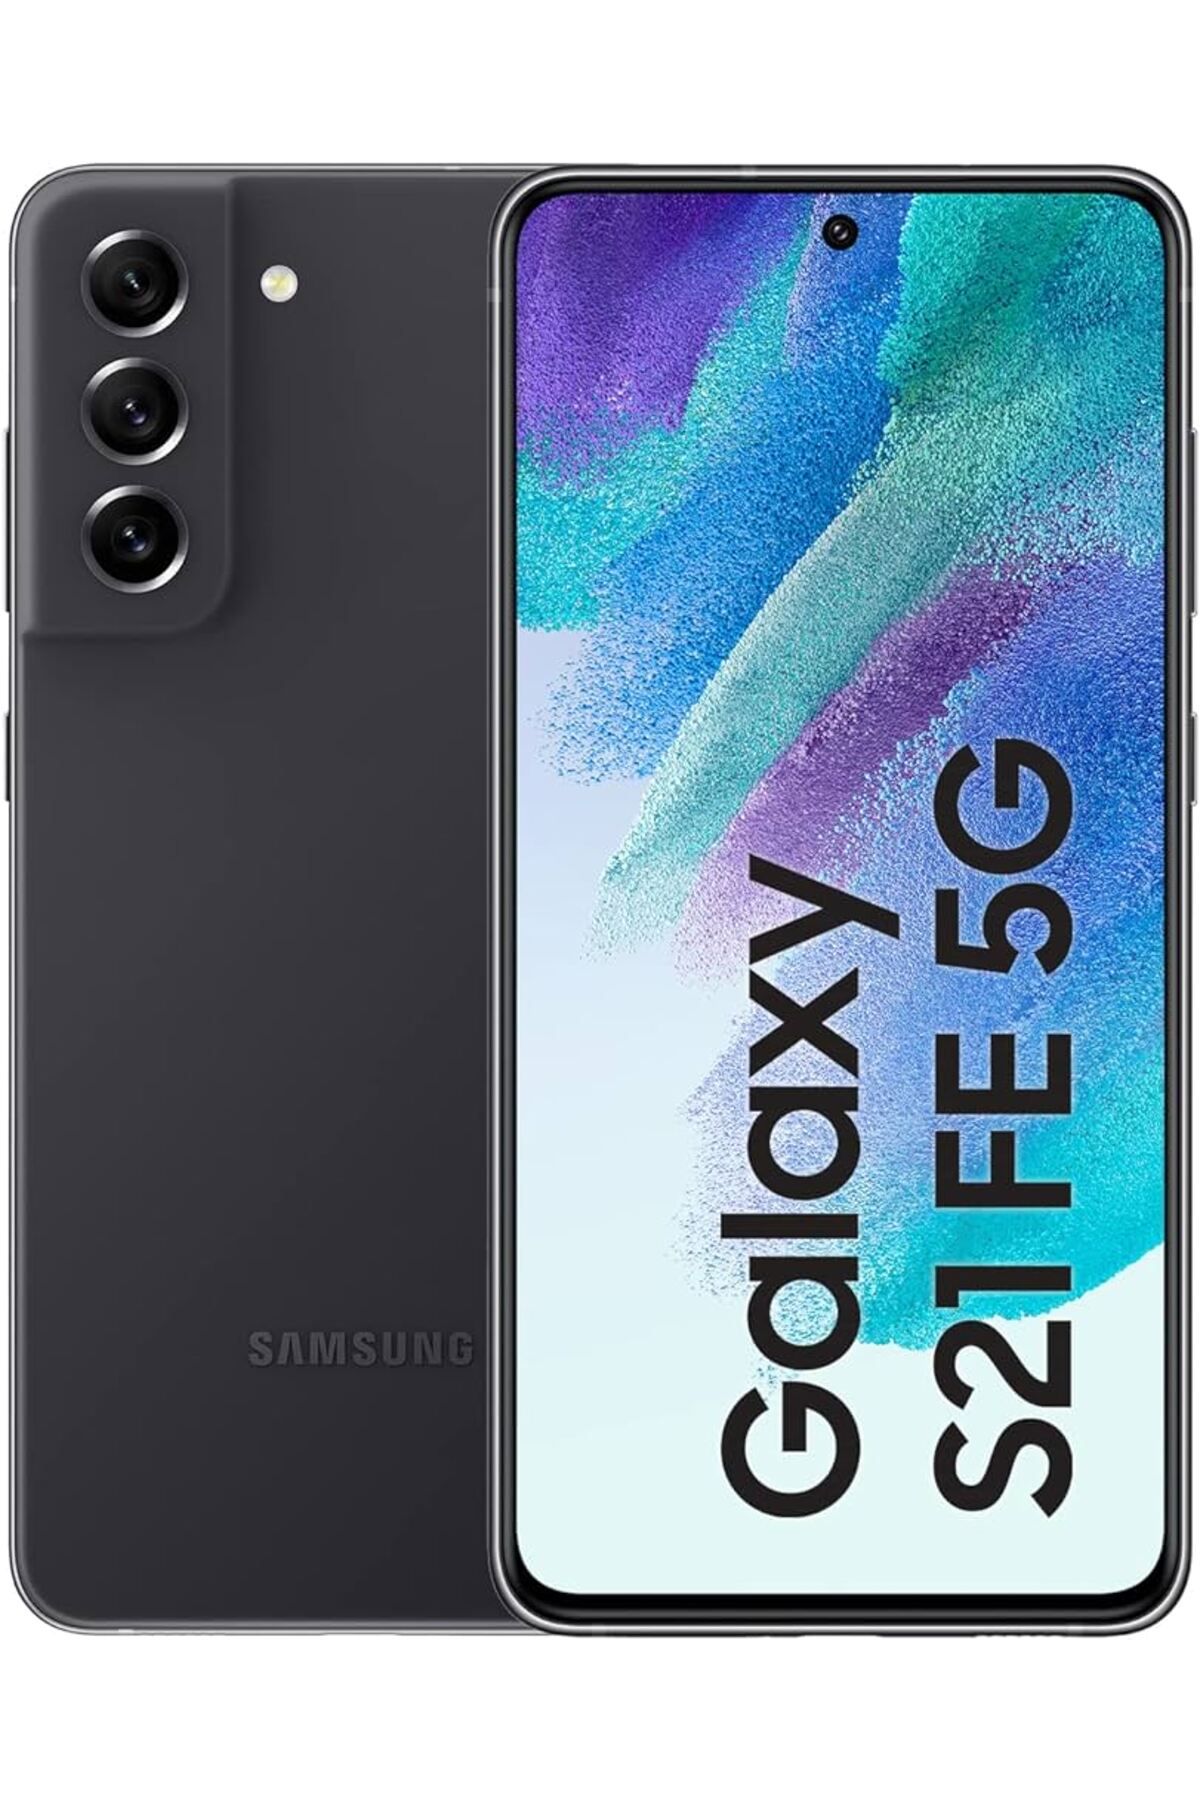 Samsung Yenilenmiş Samsung Galaxy S21 FE 128GB Siyah B Kalite